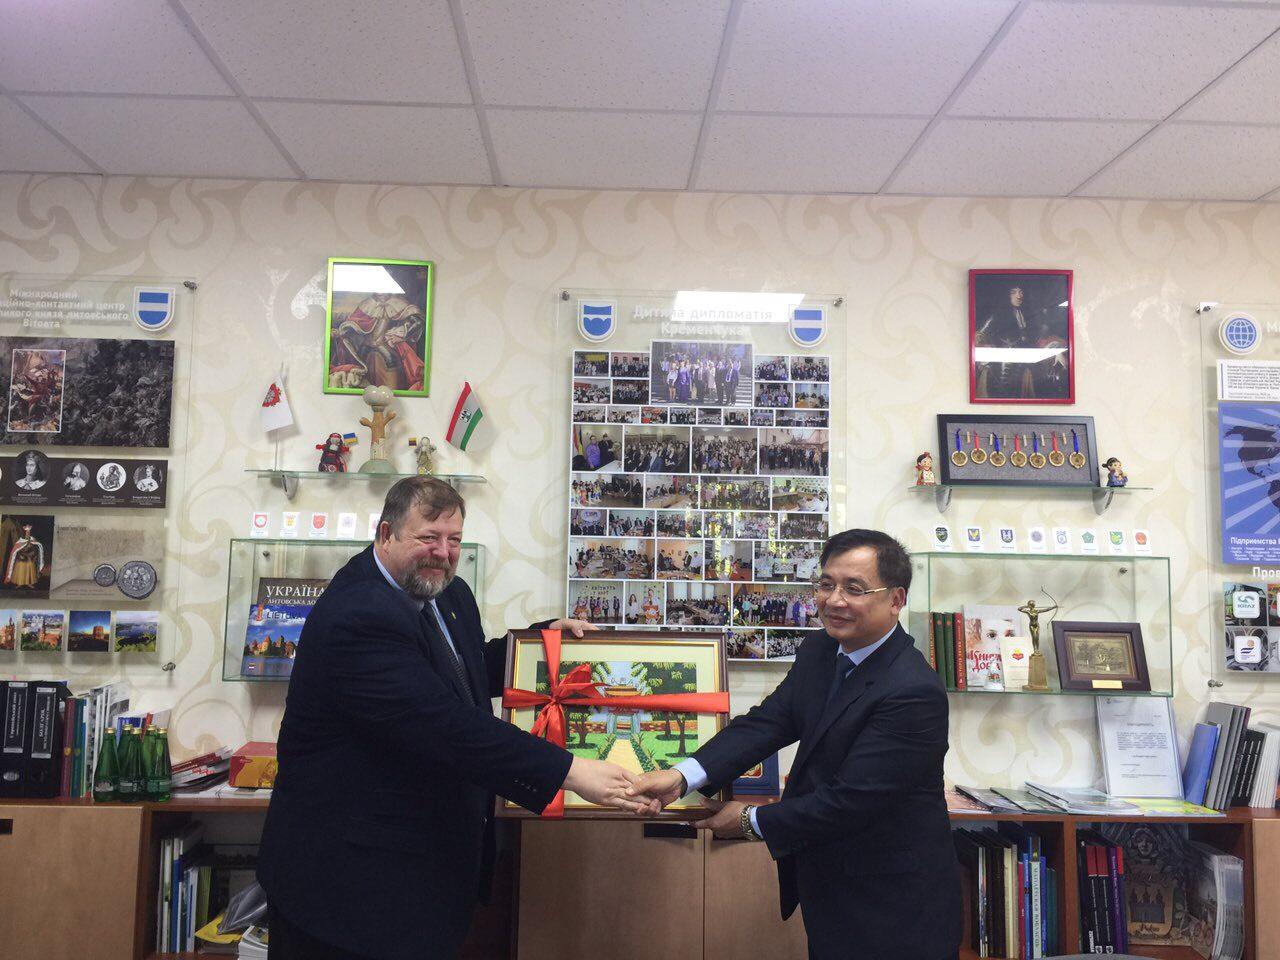 Đại sứ Nguyễn Anh Tuấn làm việc tại thành phố Kremenchuk và dự Khai mạc Hội chợ Sorochinsky 2019